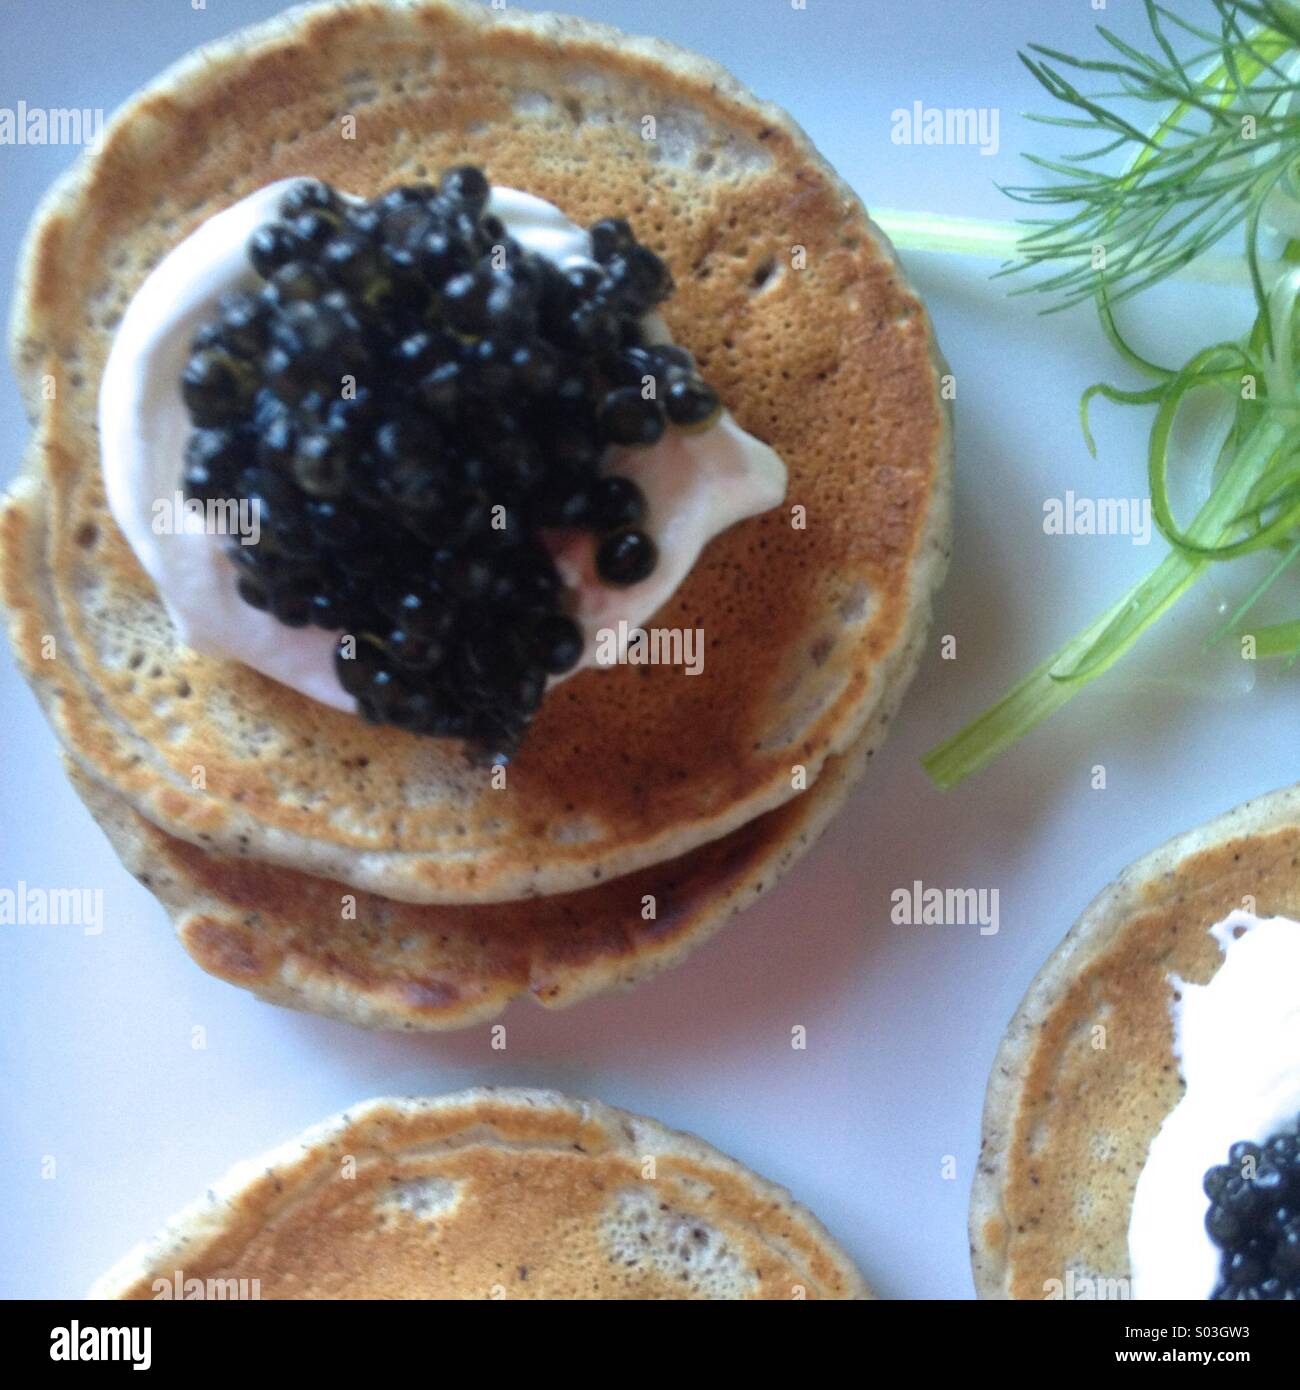 Blini with caviar and Creme fraiche Stock Photo